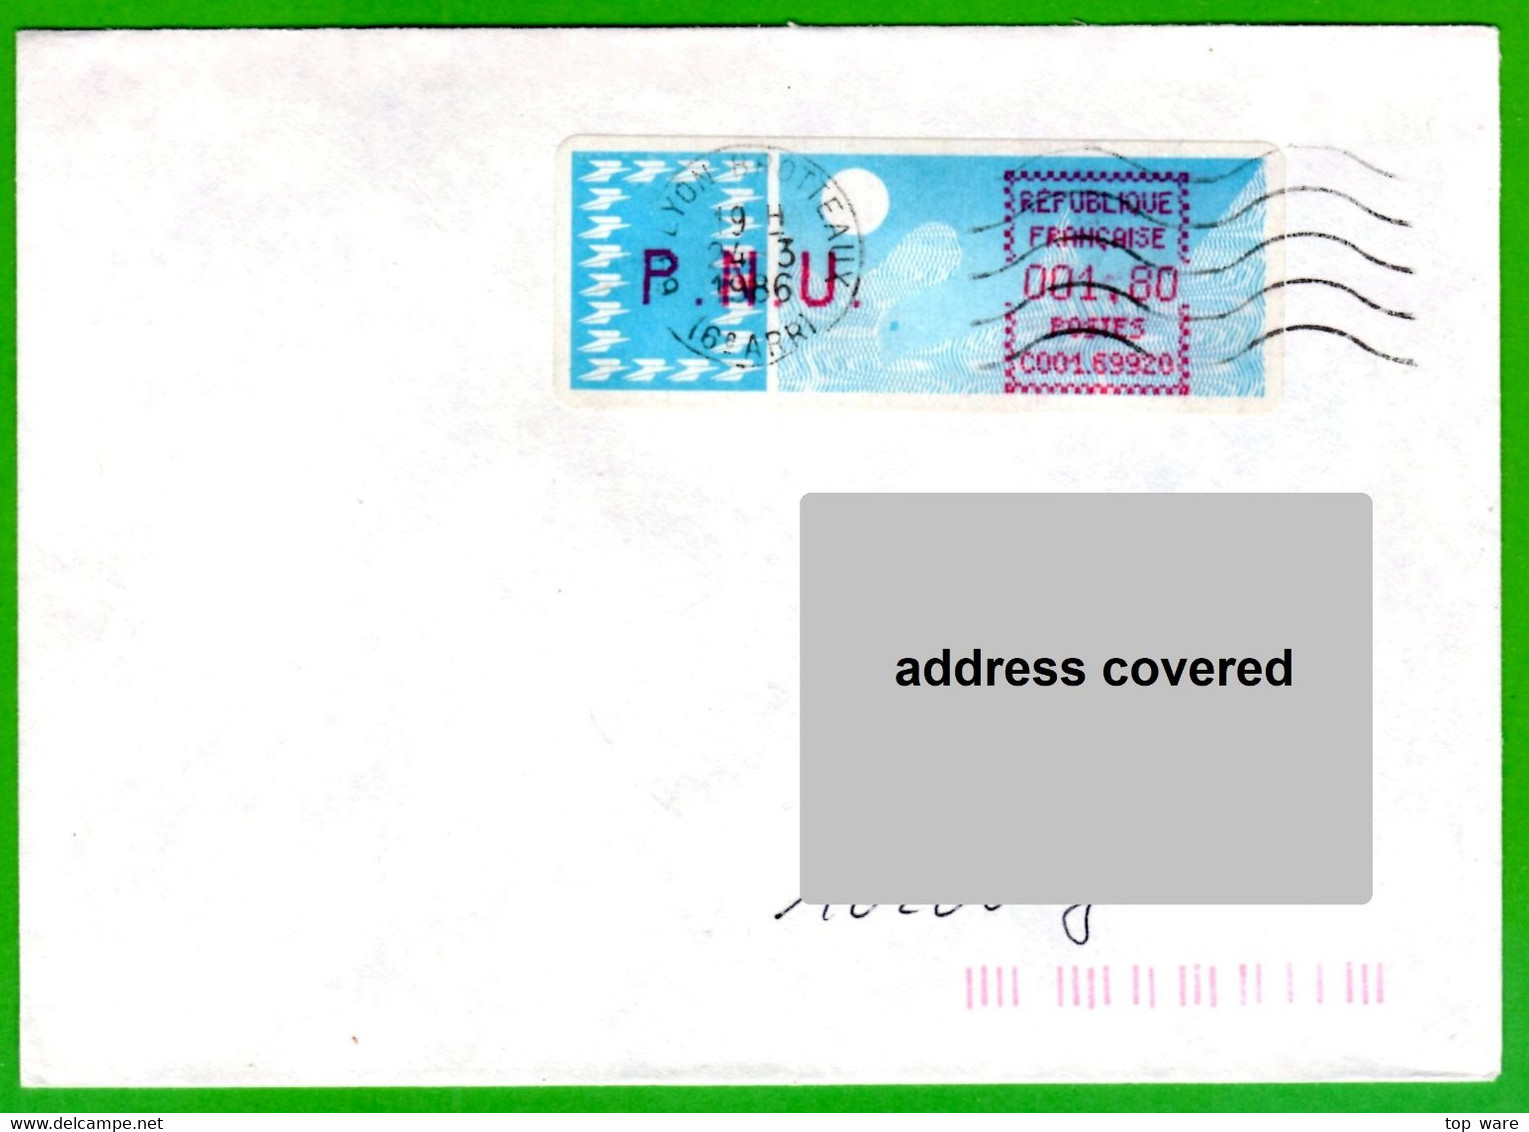 France LSA ATM Stamps C001.69920 / Michel 6.6 Zd / PNU 1,80 On Cover 24.3.86 Lyon Brotteaux / Distributeurs - 1985 Papier « Carrier »